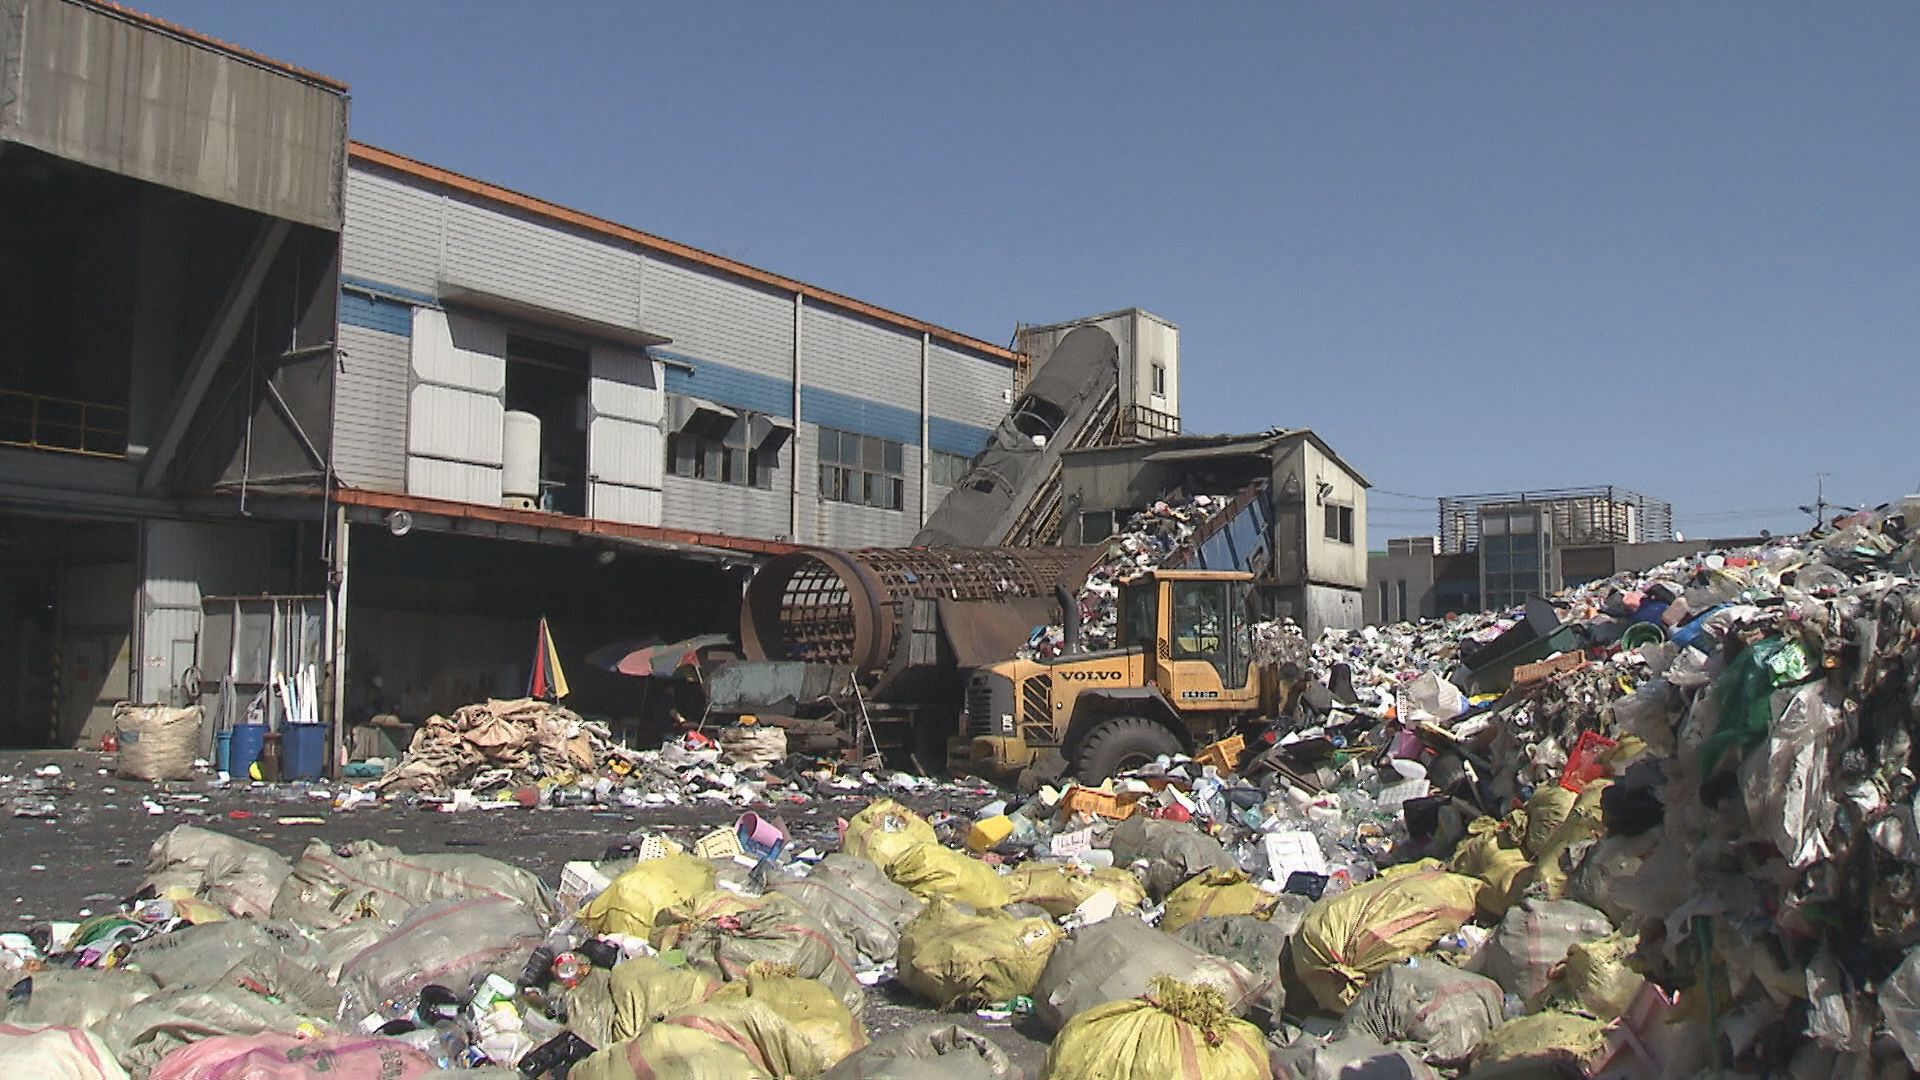  부산 지역의 재활용 쓰레기가 모이는 강서구 부산시자원재활용센터 각종 쓰레기가 쌓여있다. 